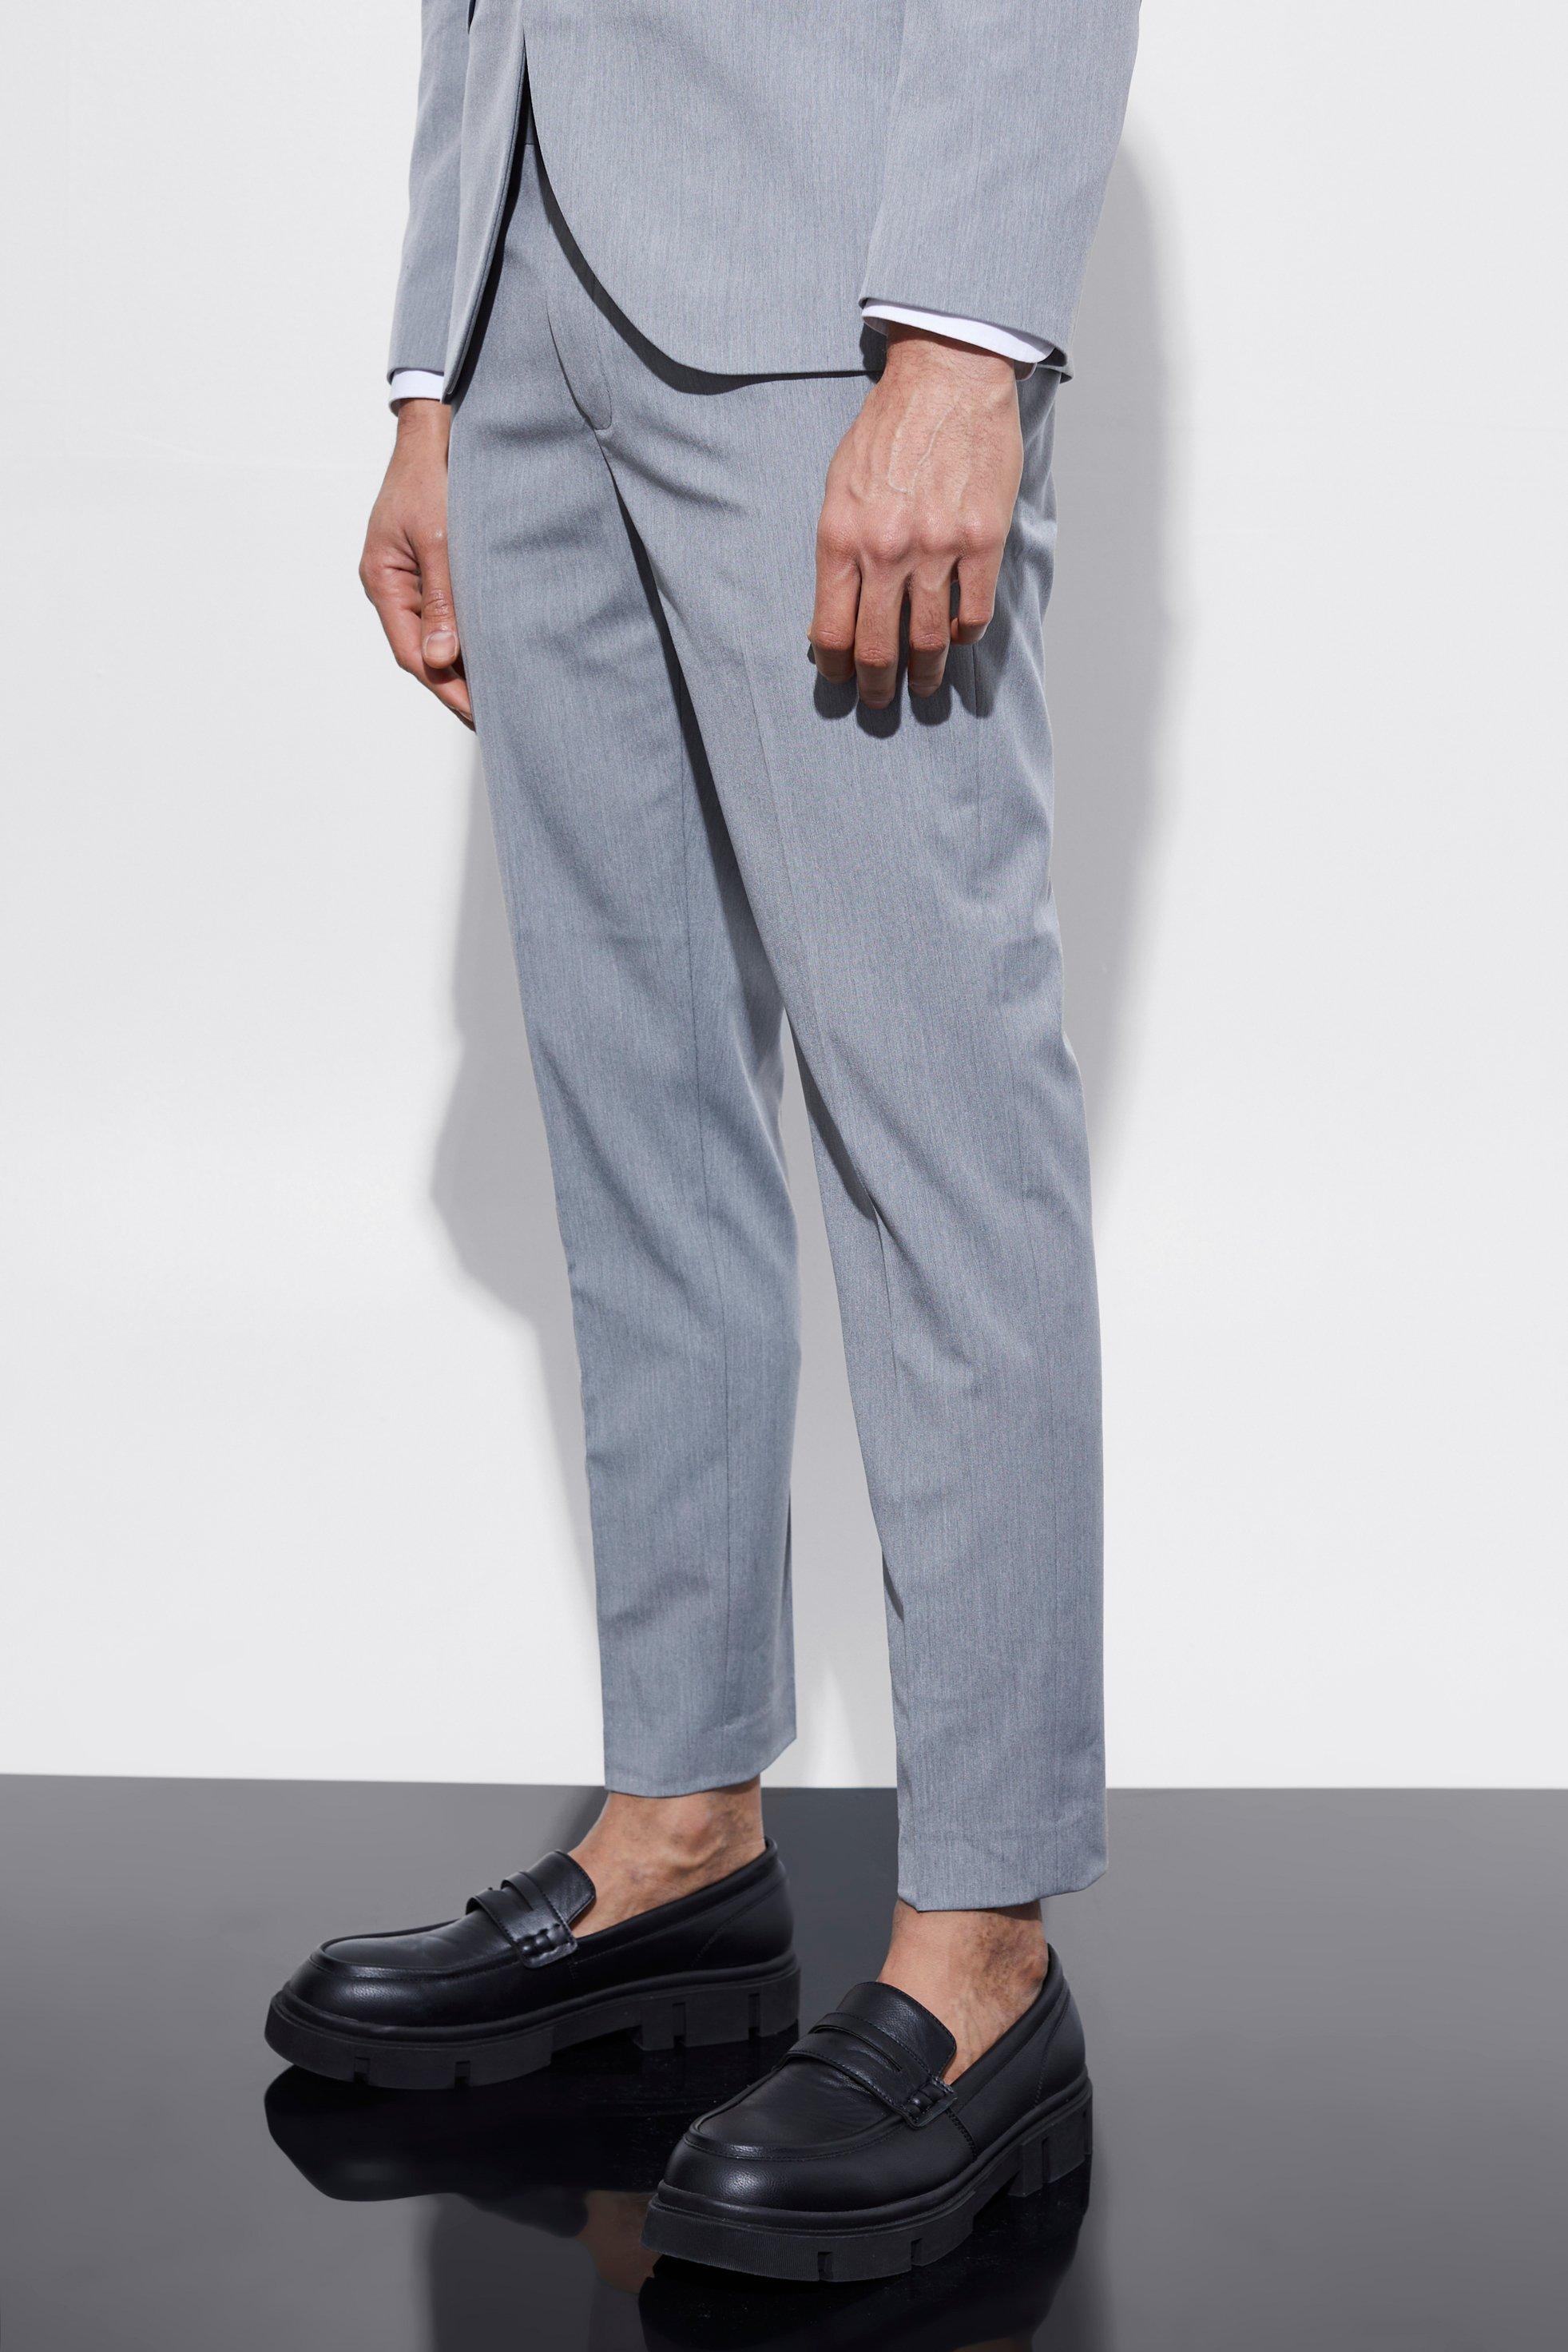 pantalon de costume skinny court homme - gris - 34s, gris